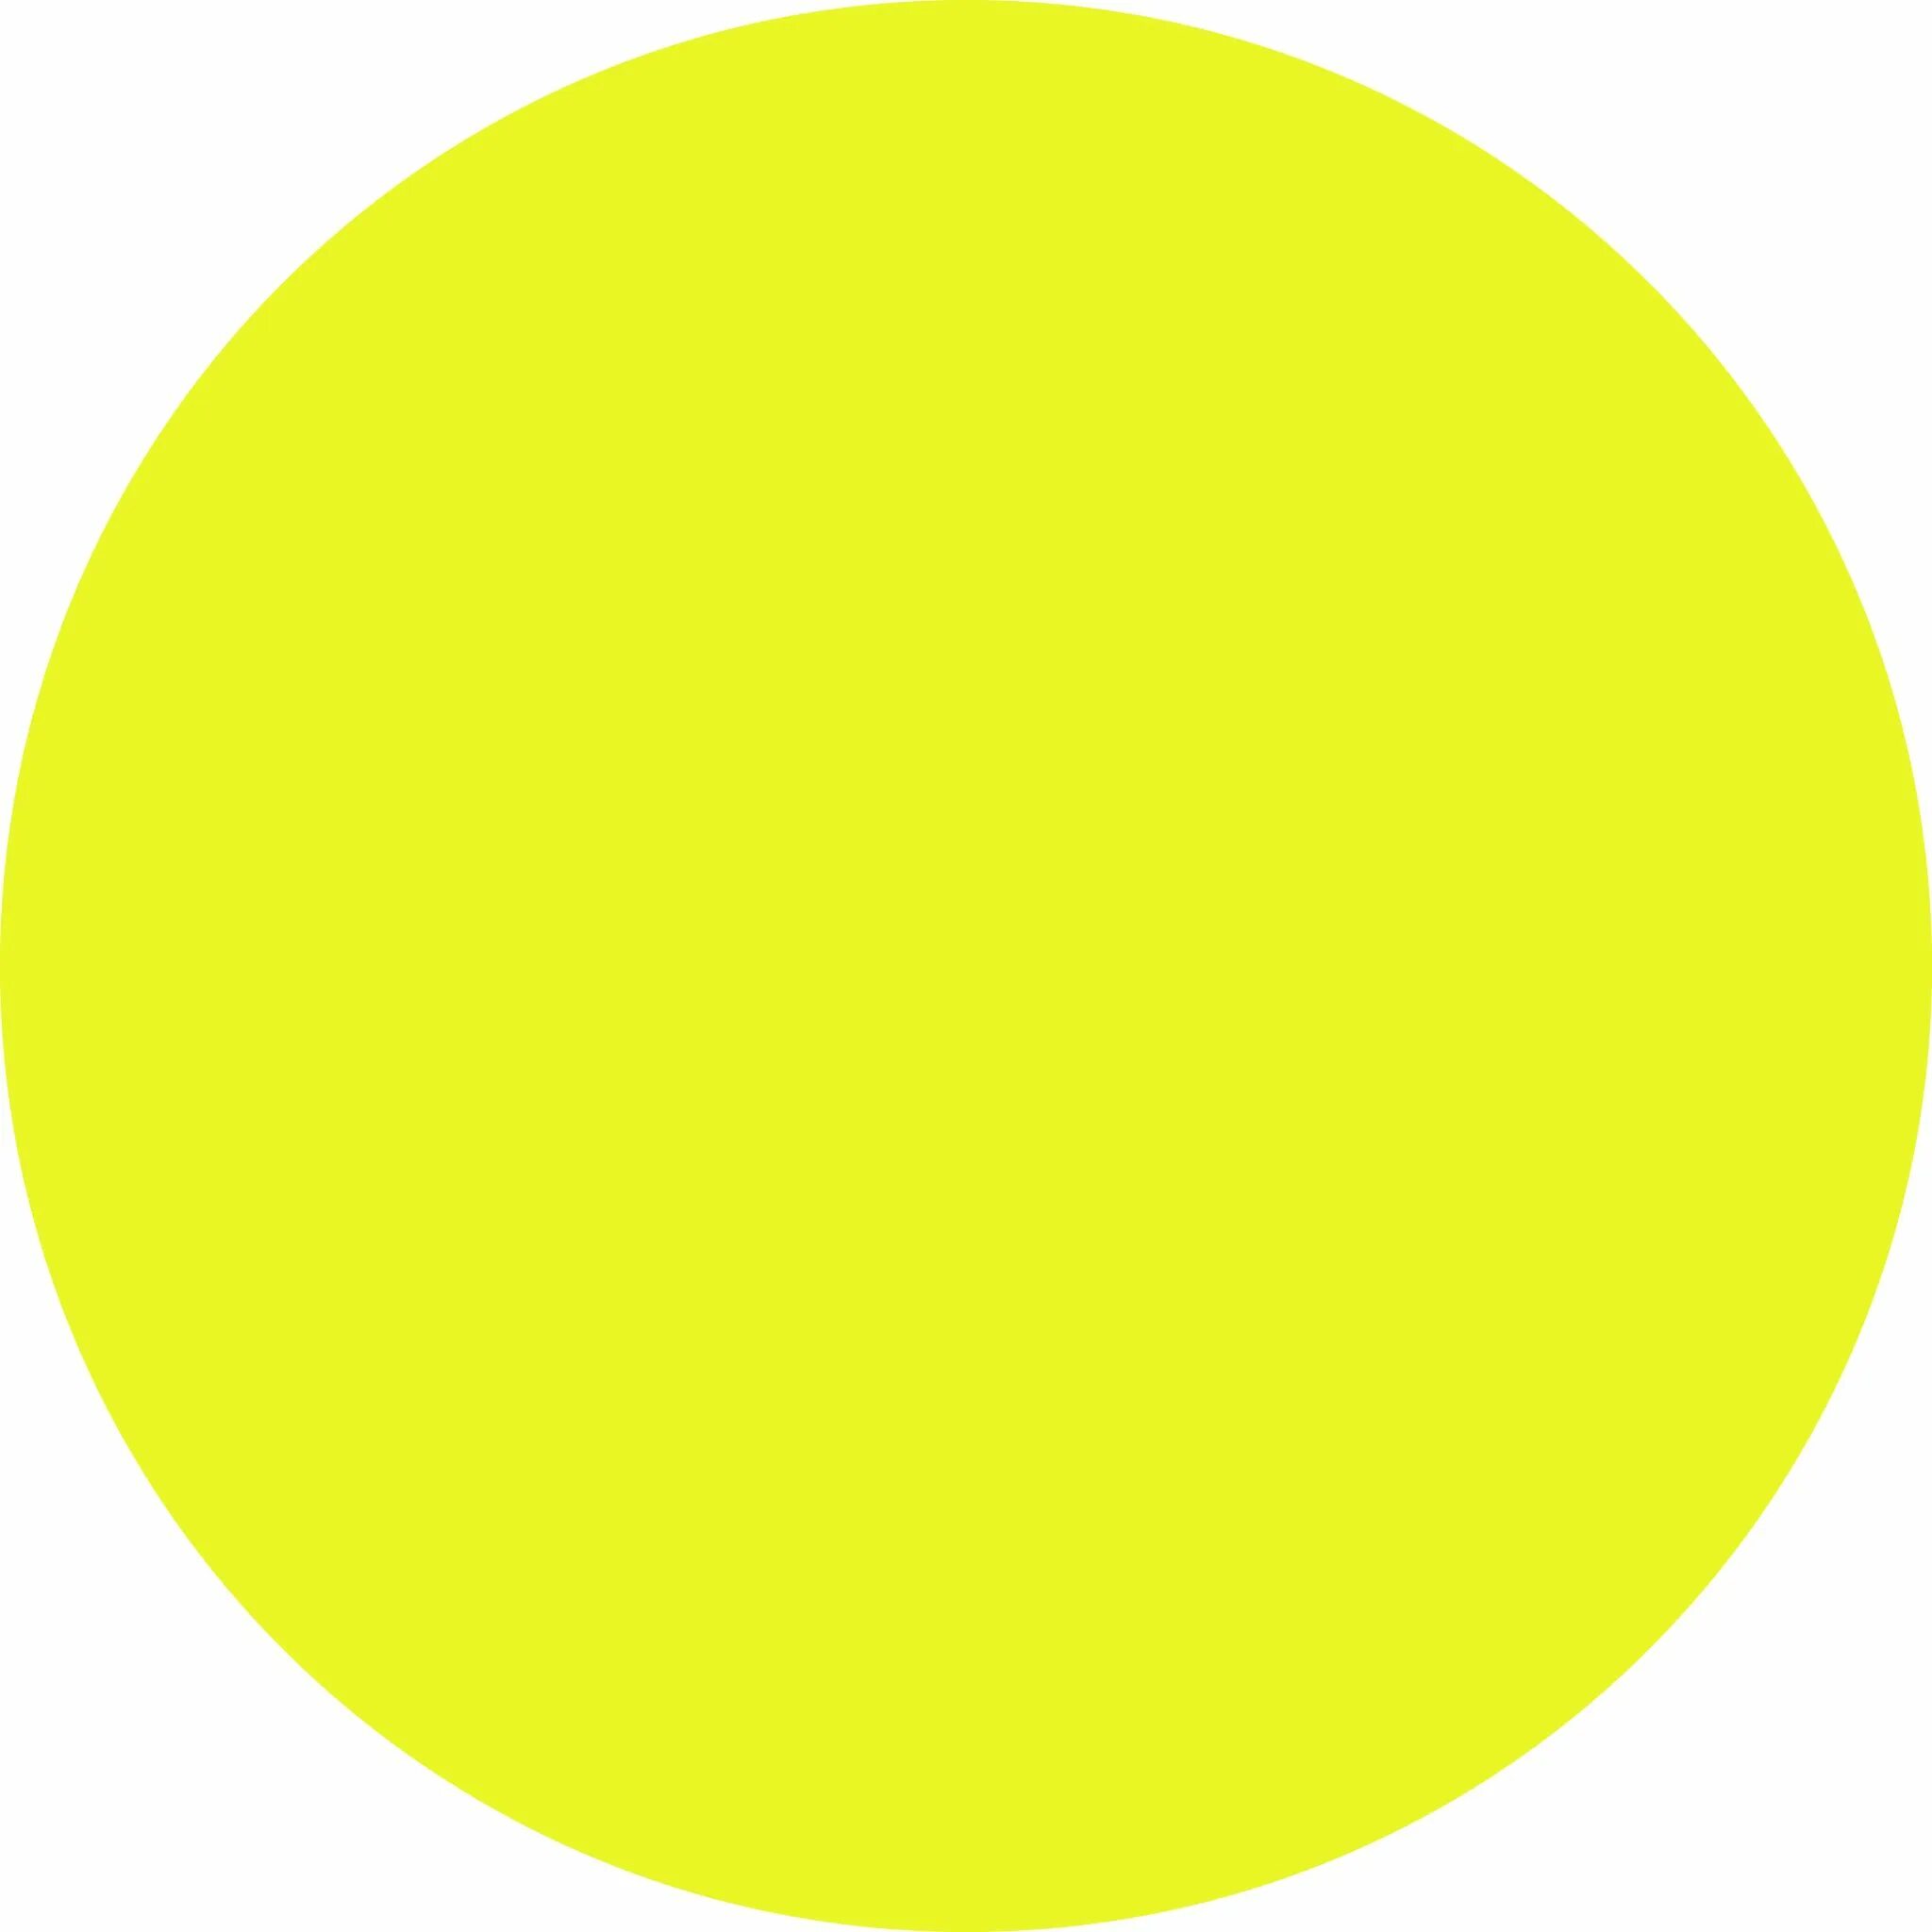 Круг желтый лист. Желтый круг. Желтый кружок. Желтые кружочки. Желтый круг для слабовидящих.